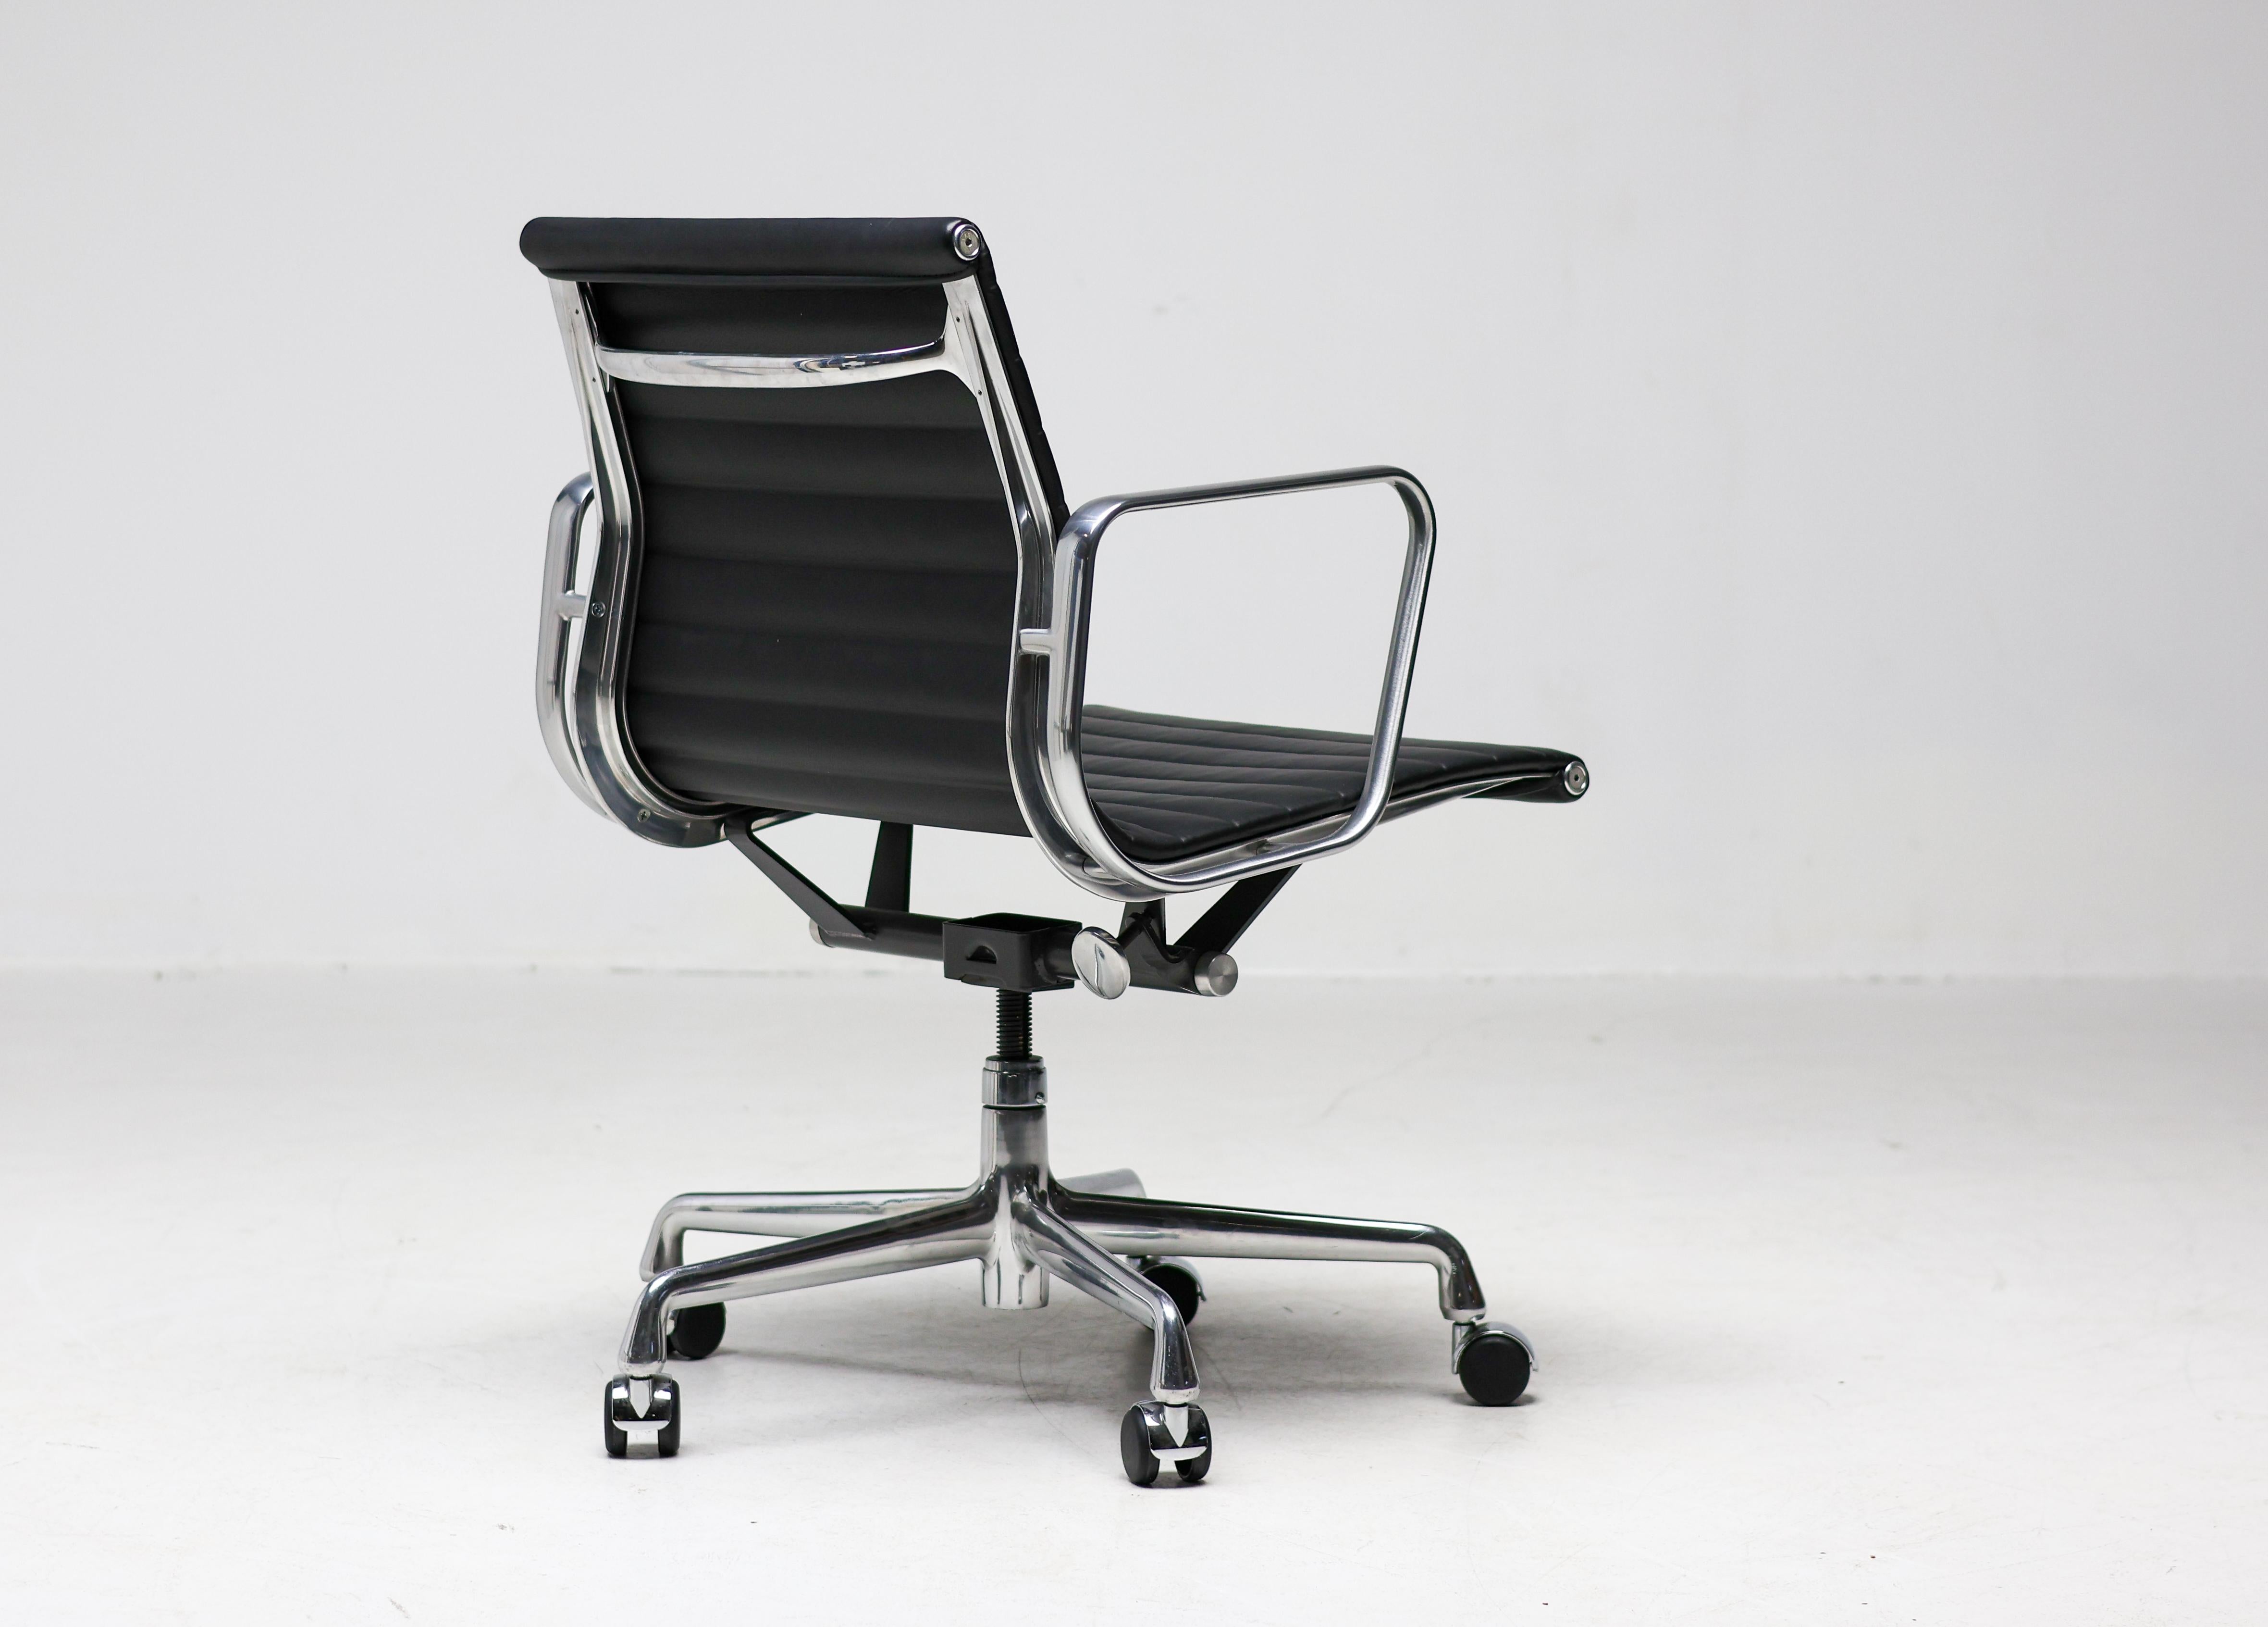 Bürostuhl, Modell EA117, in den USA bekannt als EA335, entworfen von Charles und Ray Eames für Herman Miller. Rückenlehne und Sitz aus schwarzem Leder, sowohl vorne als auch hinten. Gestell, Armlehnen und Fünfsternfuß aus Aluminiumdruckguss.